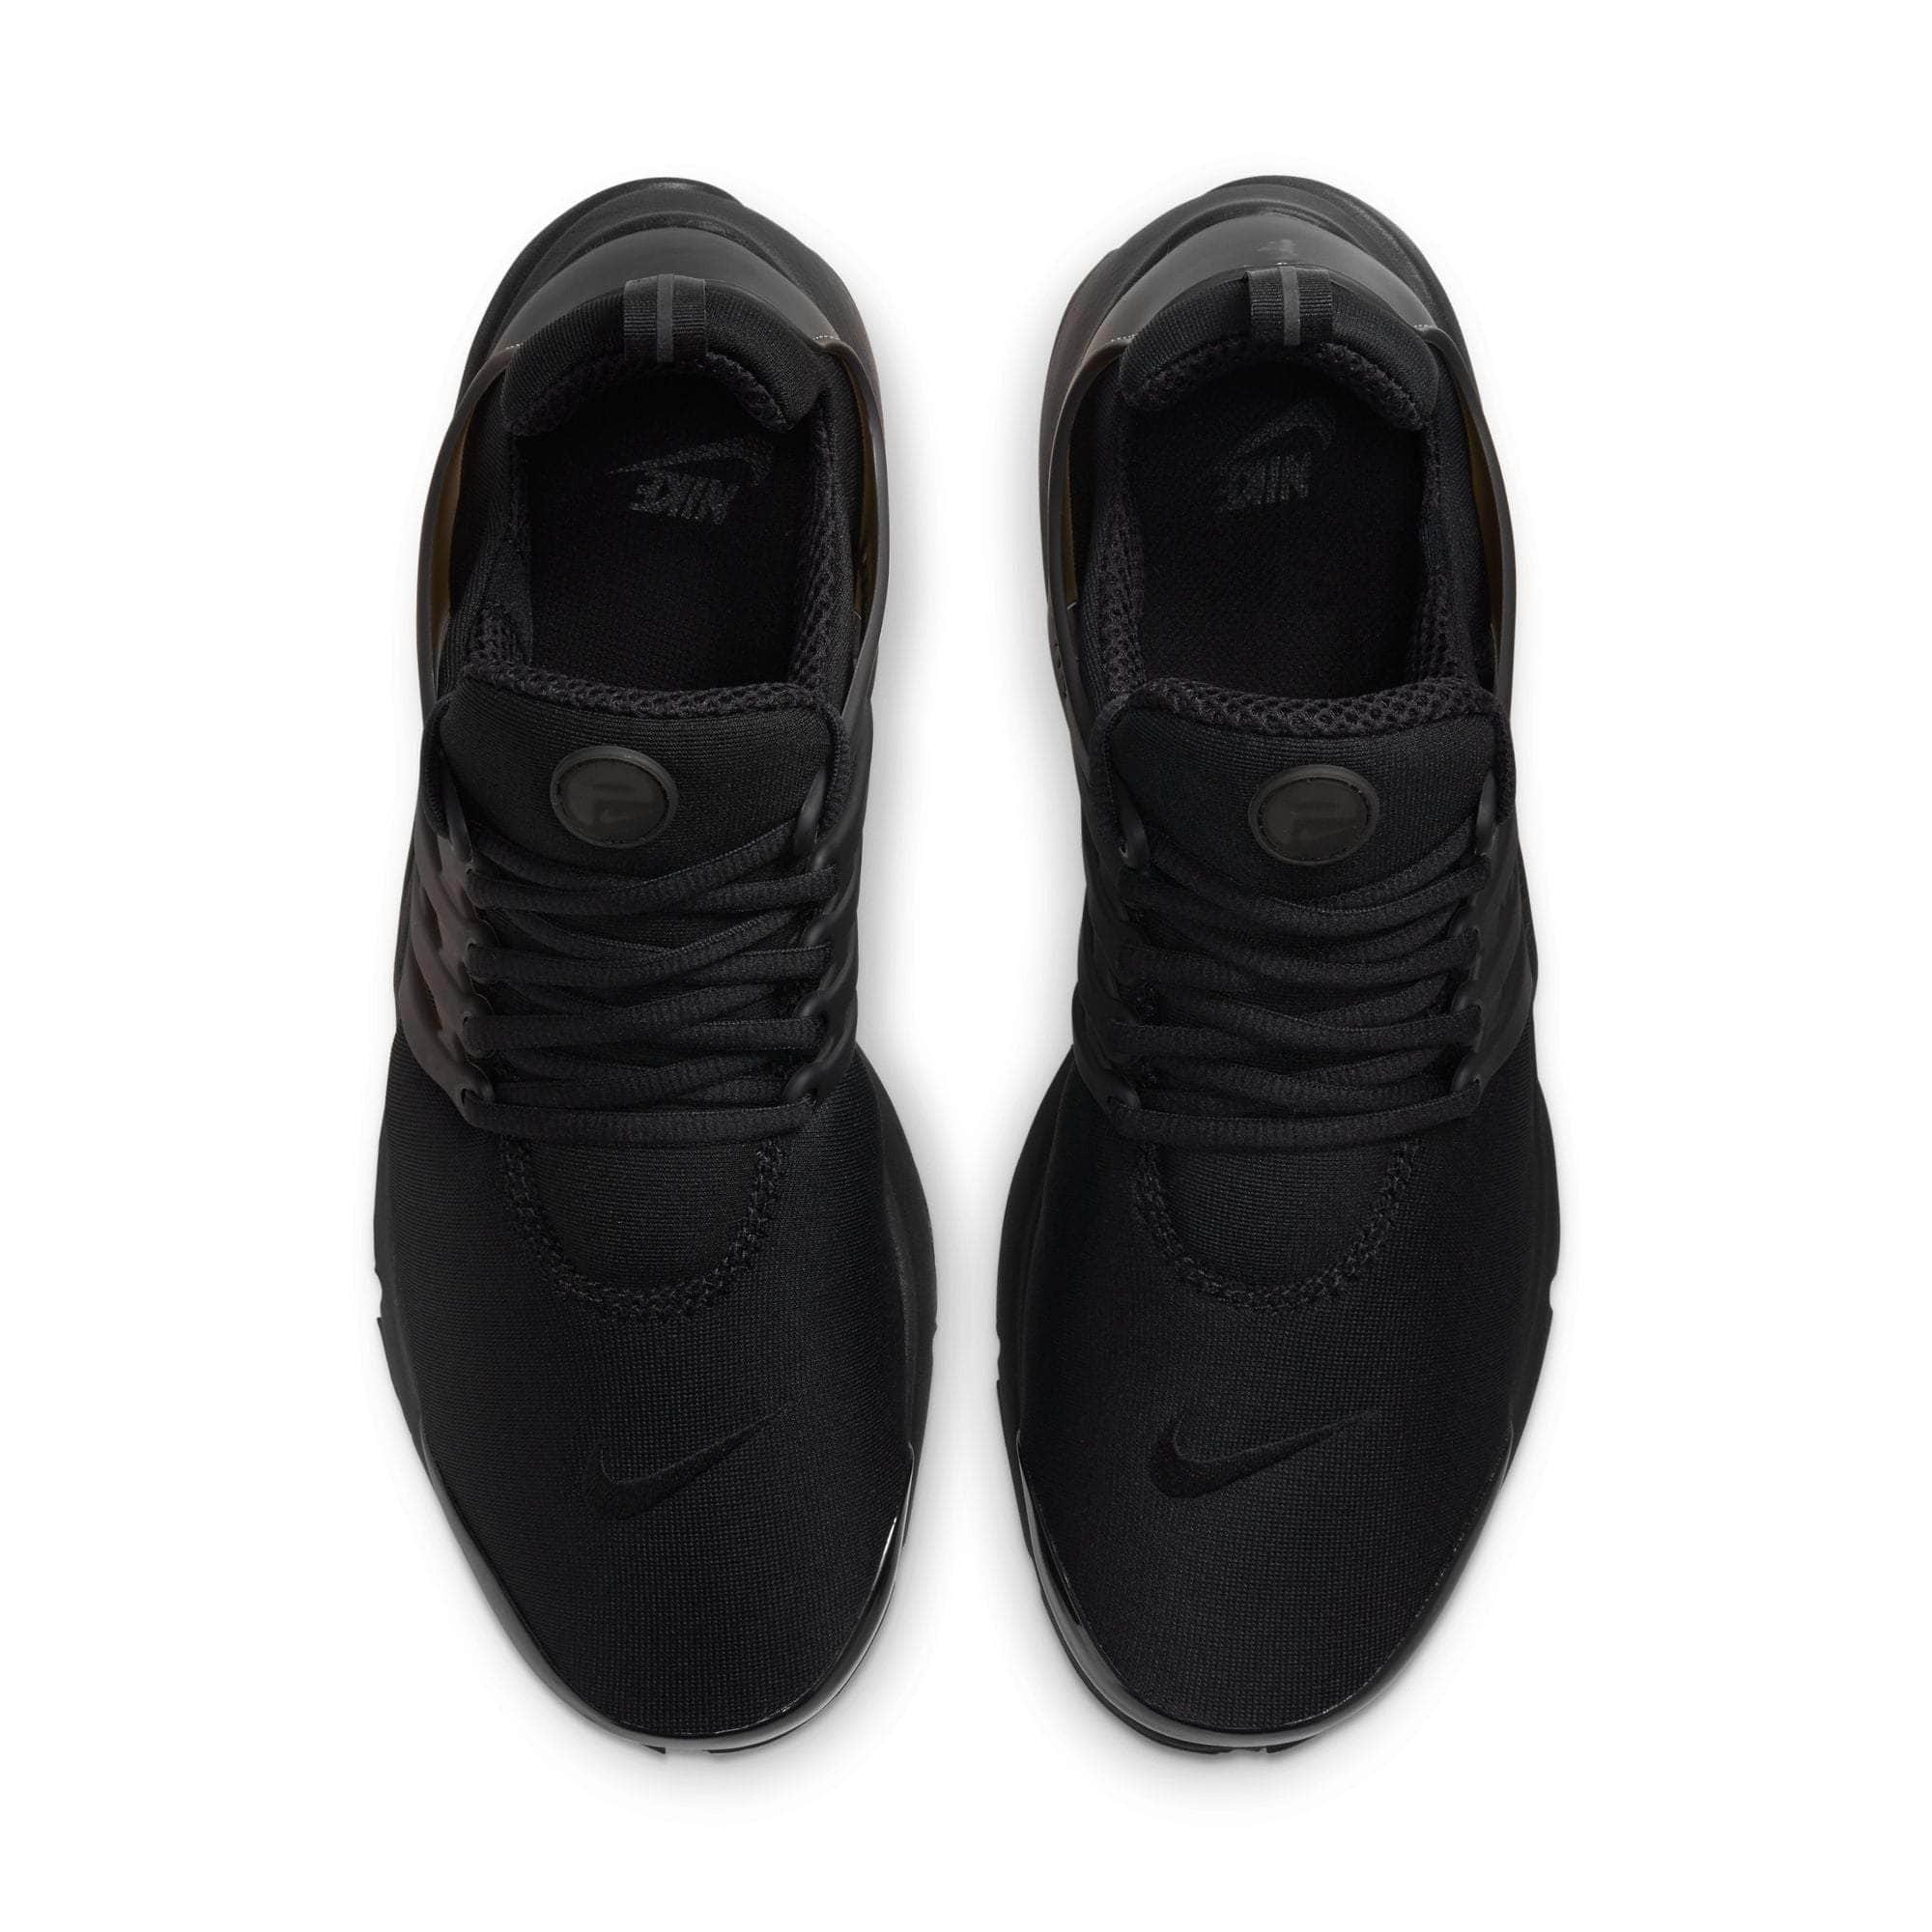 Noord Amerika mini Bestuurbaar Nike Air Presto "Triple Black" - Men's - GBNY